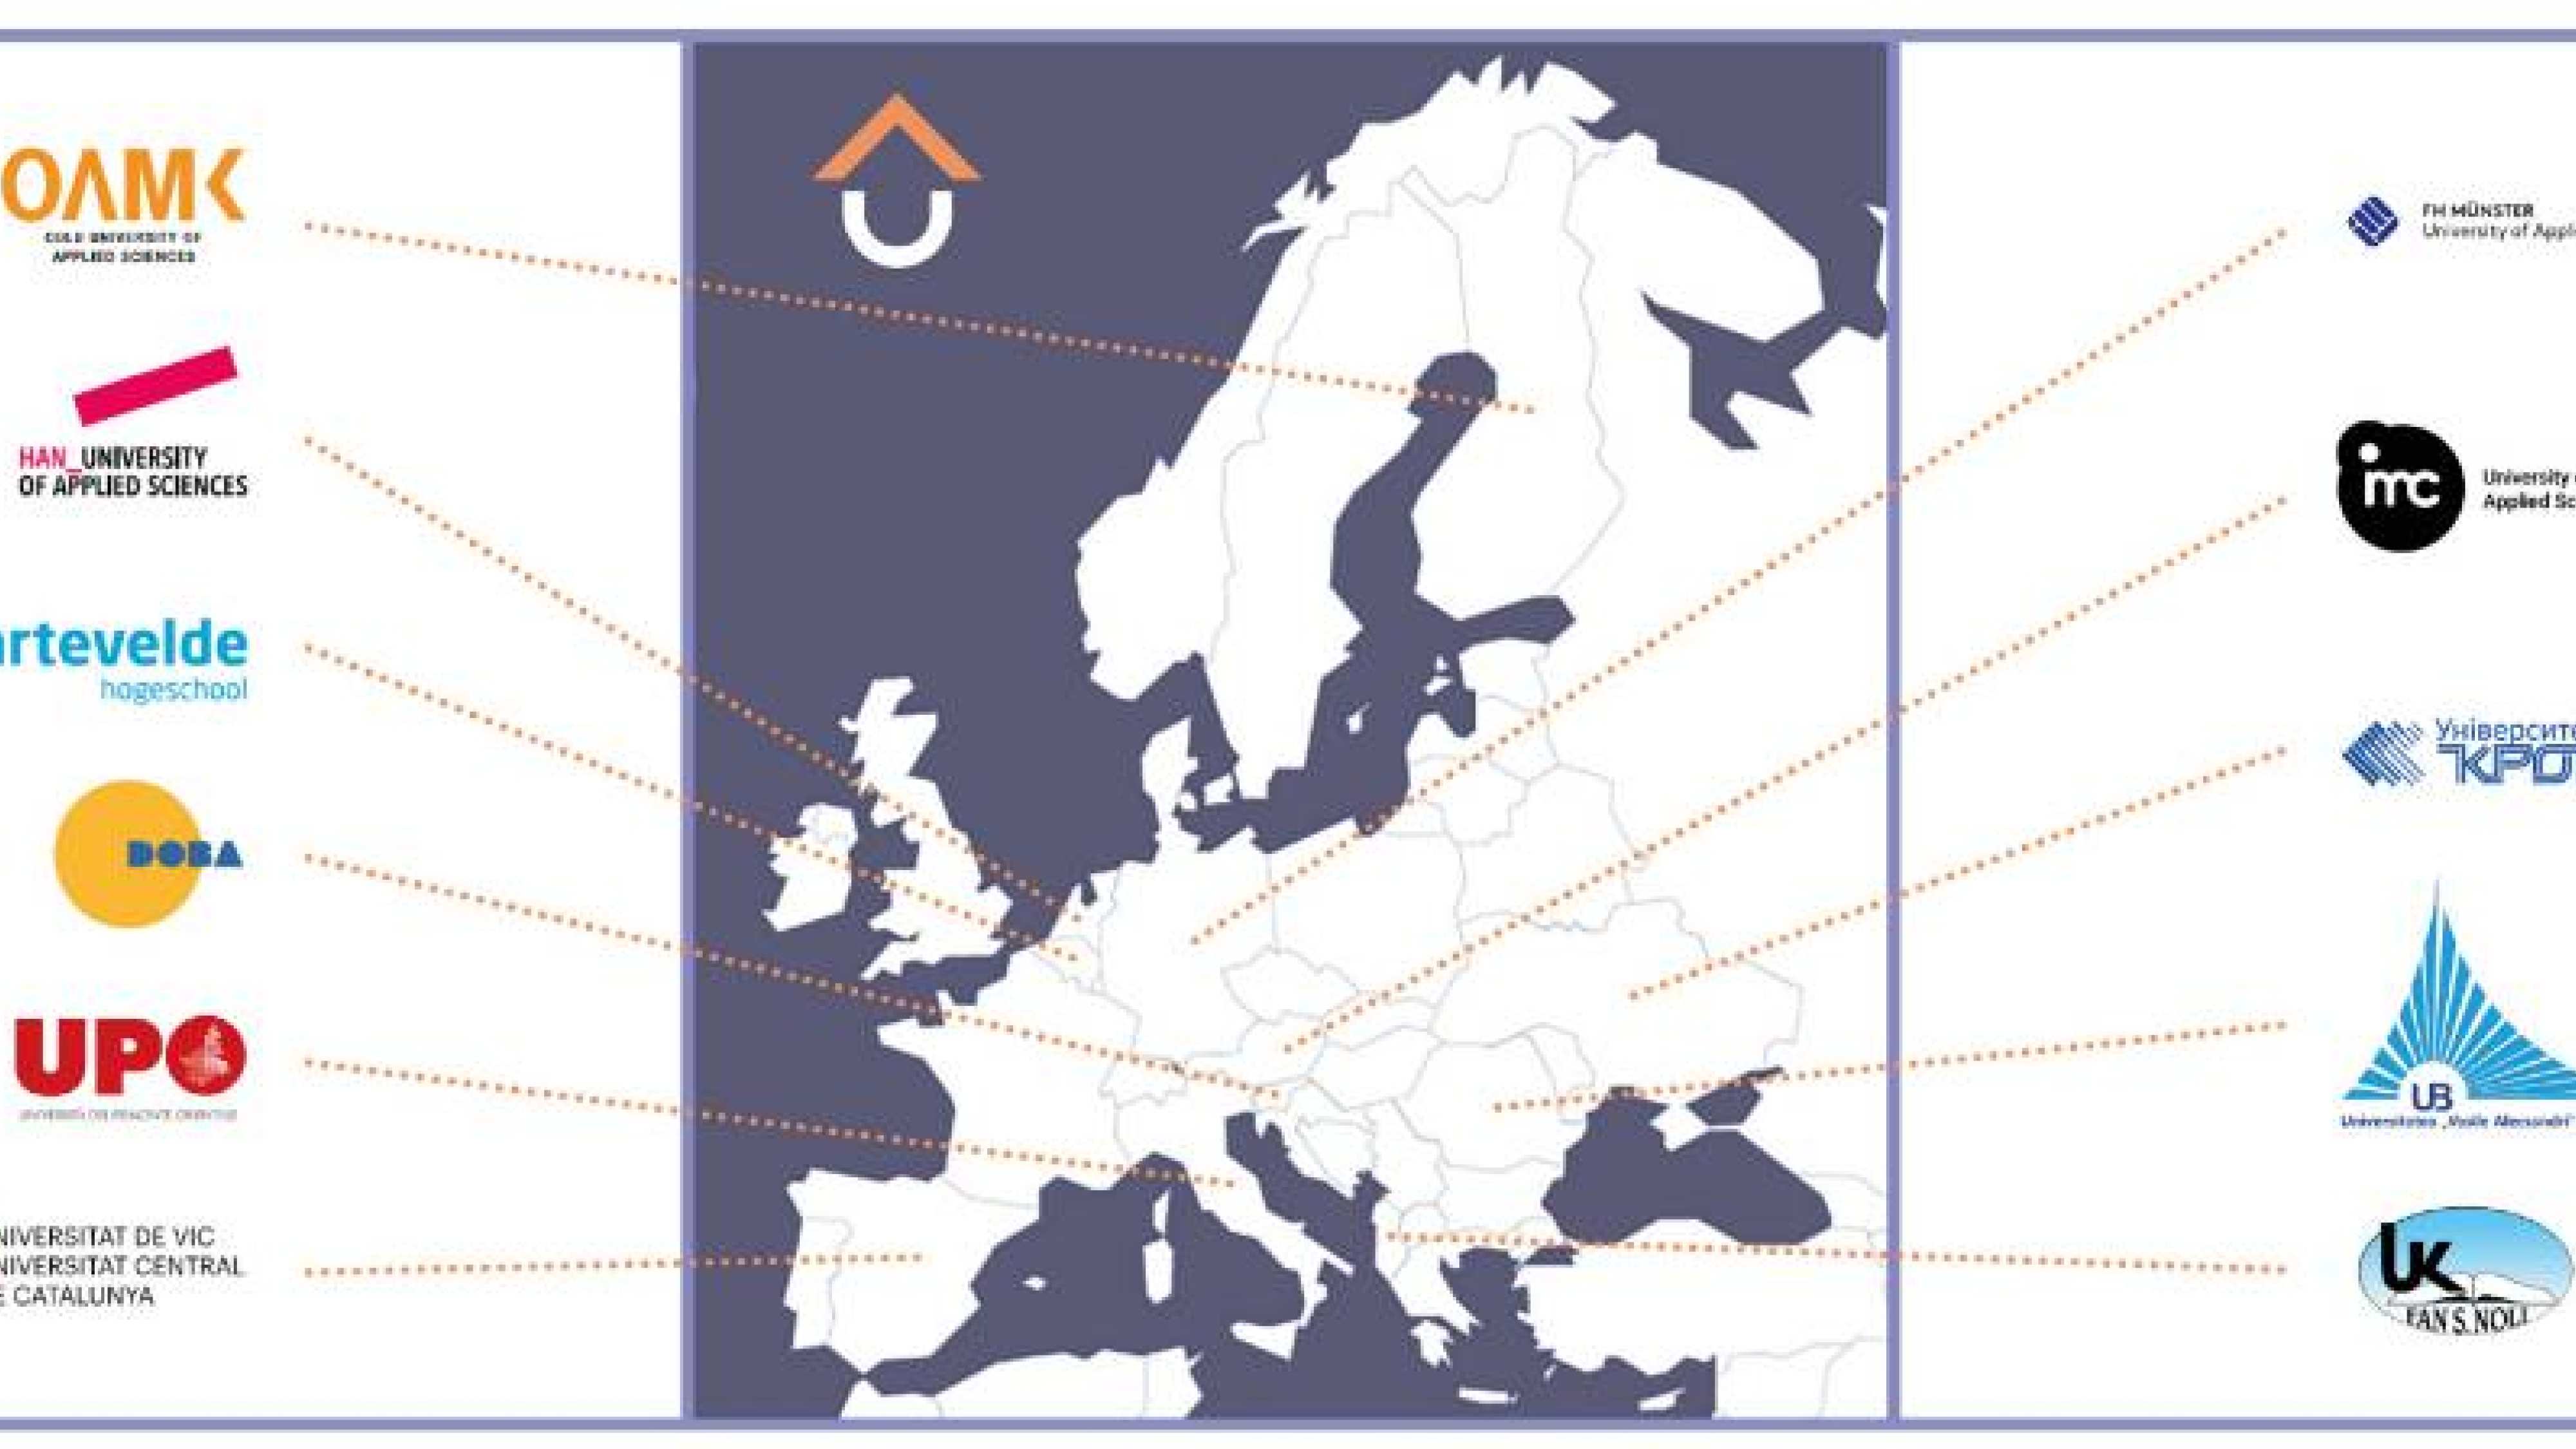 UP University ten partners European map - Toegevoegd door Naomi Plass